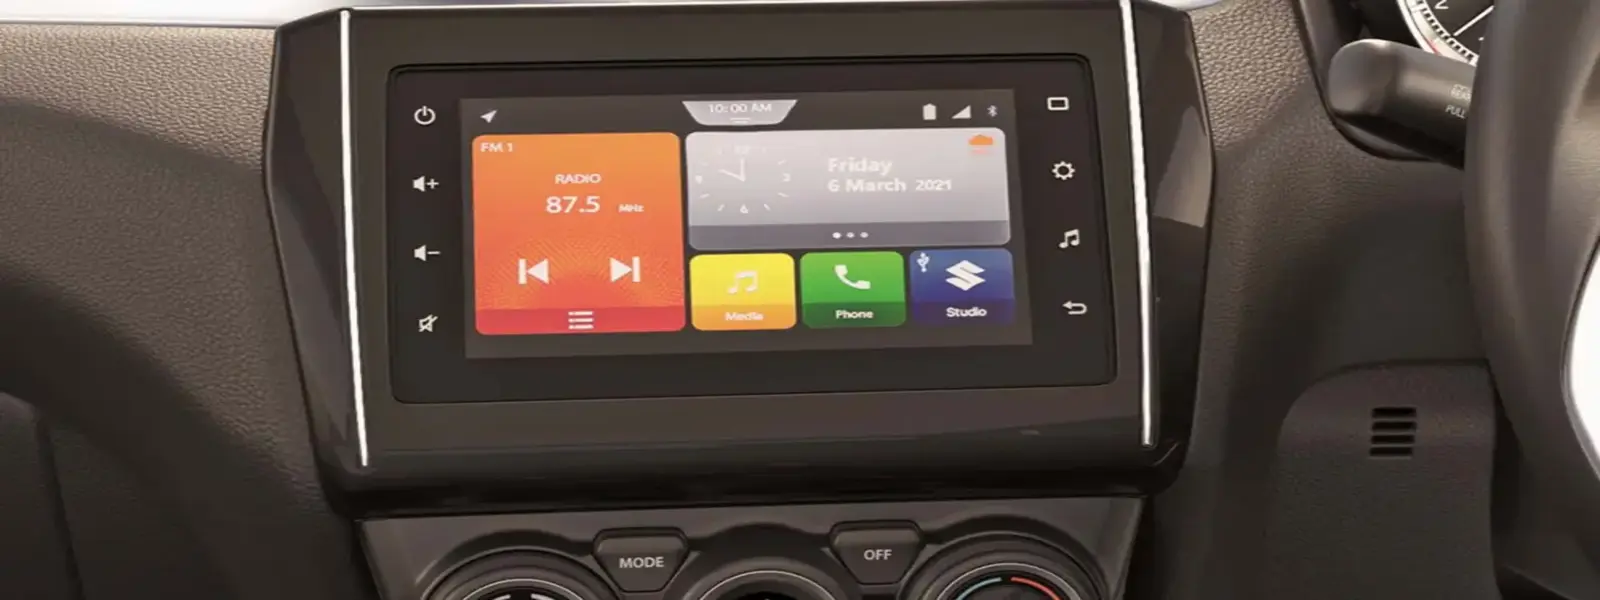 Swift- SmartPlay Infotainment System Poddar Car World Garchuk, Guwahati